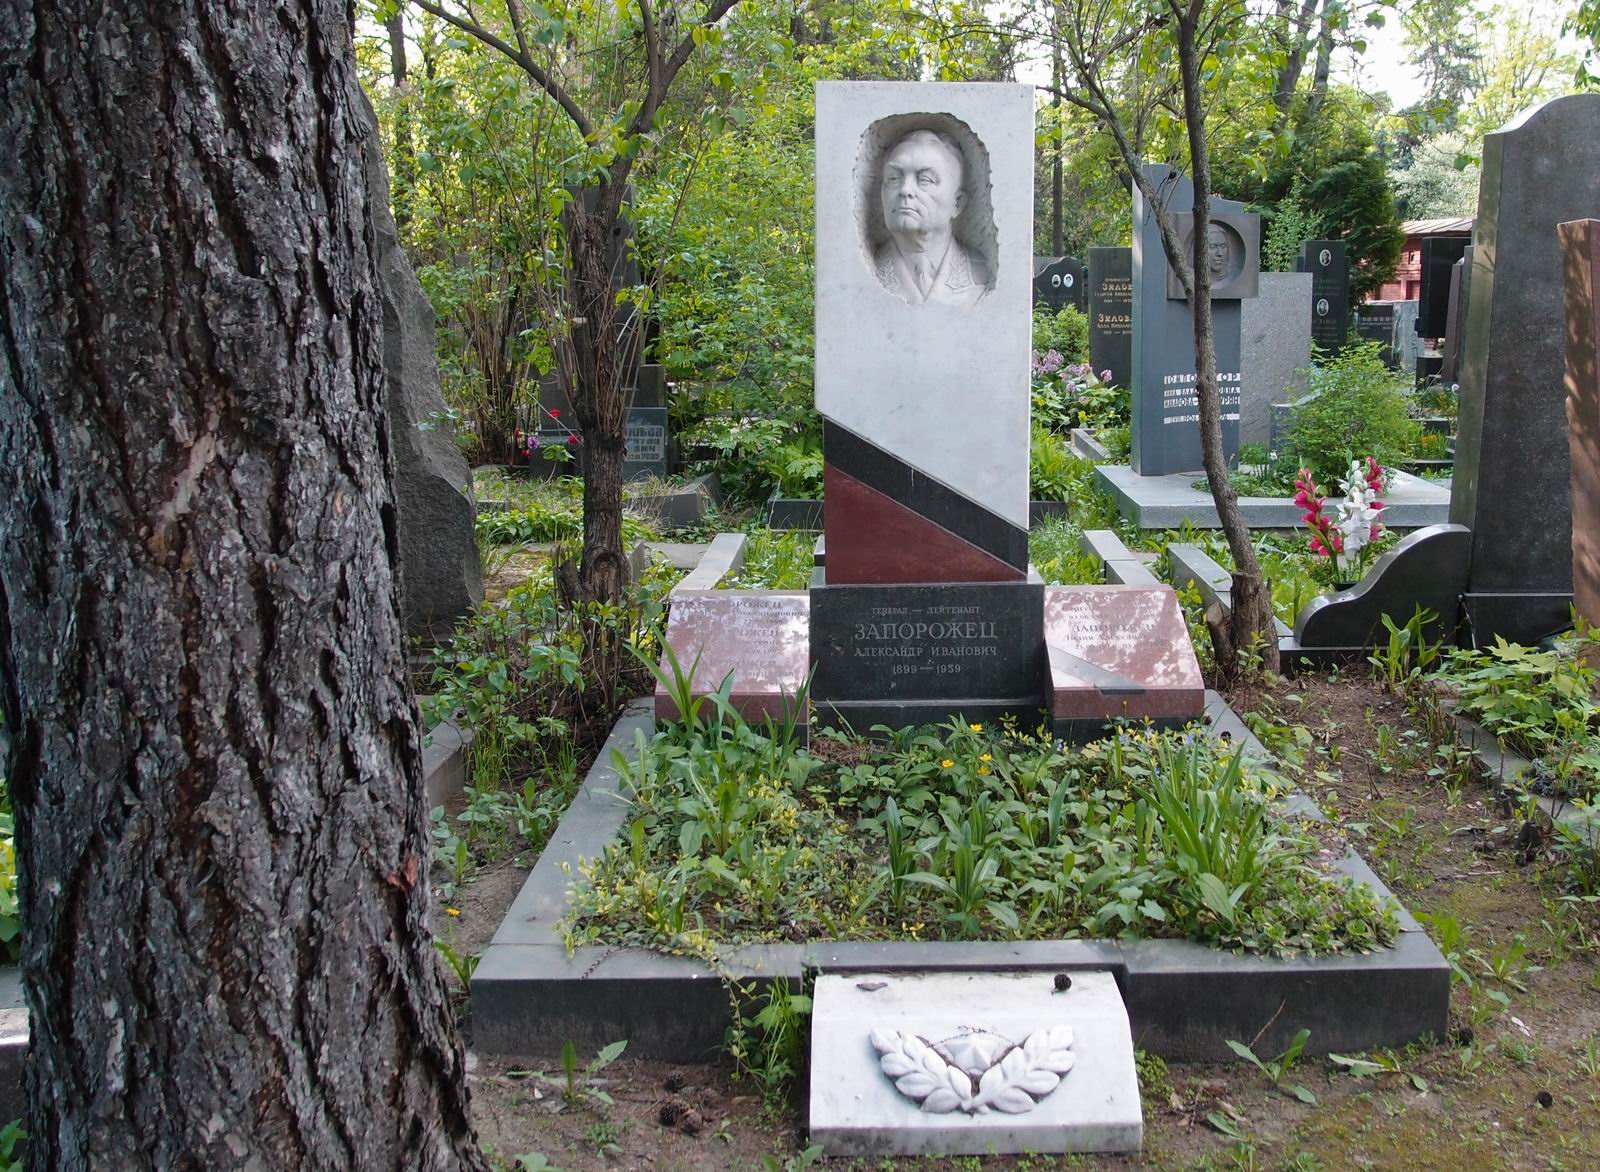 Памятник на могиле Запорожца А.И. (1899-1959), ск. Г.Постников, на Новодевичьем кладбище (5-31-5). Нажмите левую кнопку мыши чтобы увидеть фрагмент памятника.